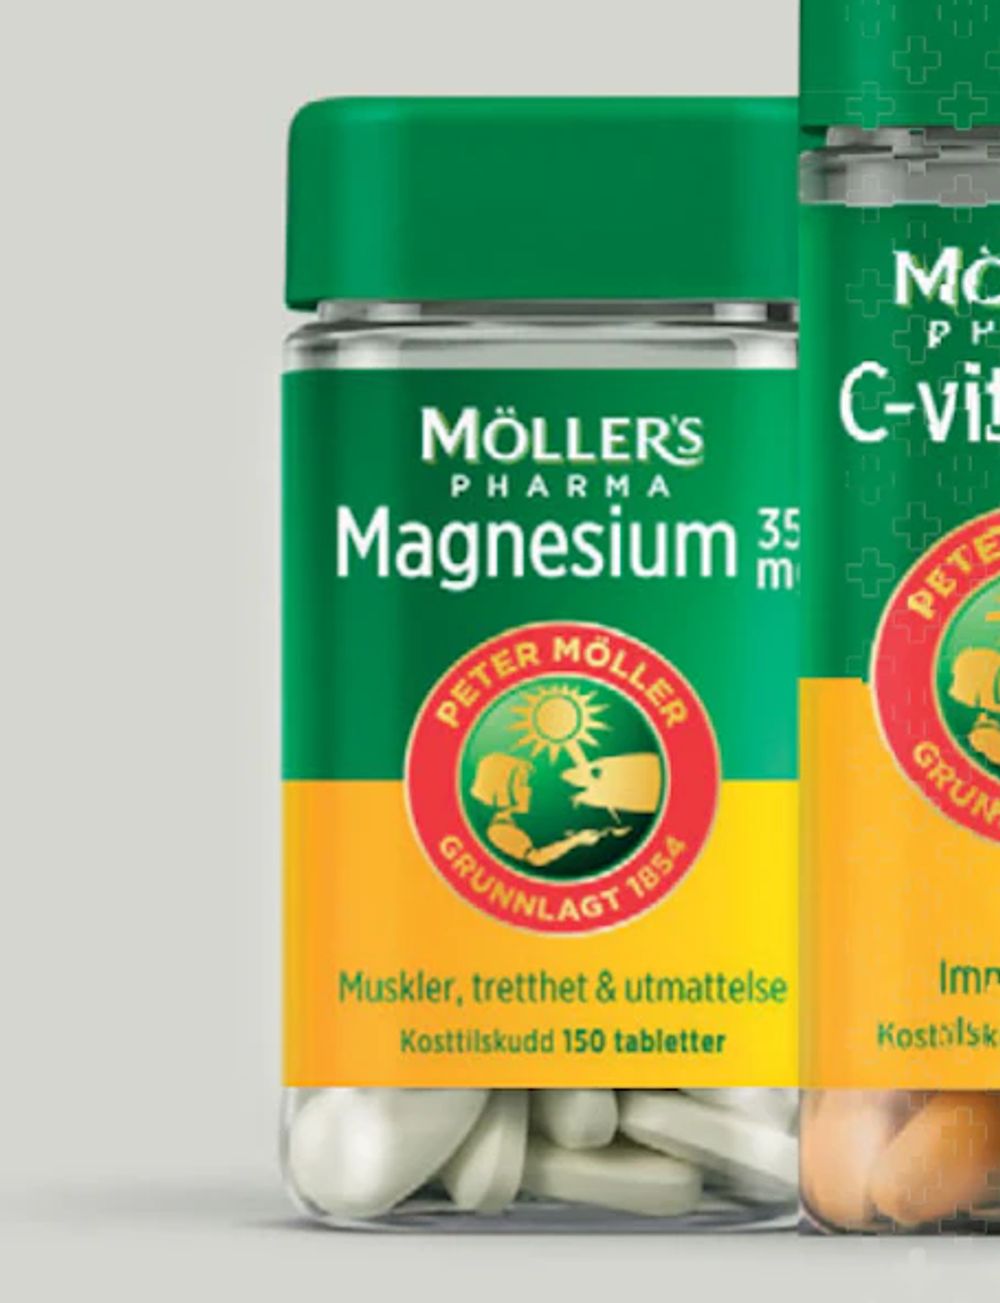 Tilbud på Möller's Pharma Magnesium fra Vitusapotek til 99,50 kr